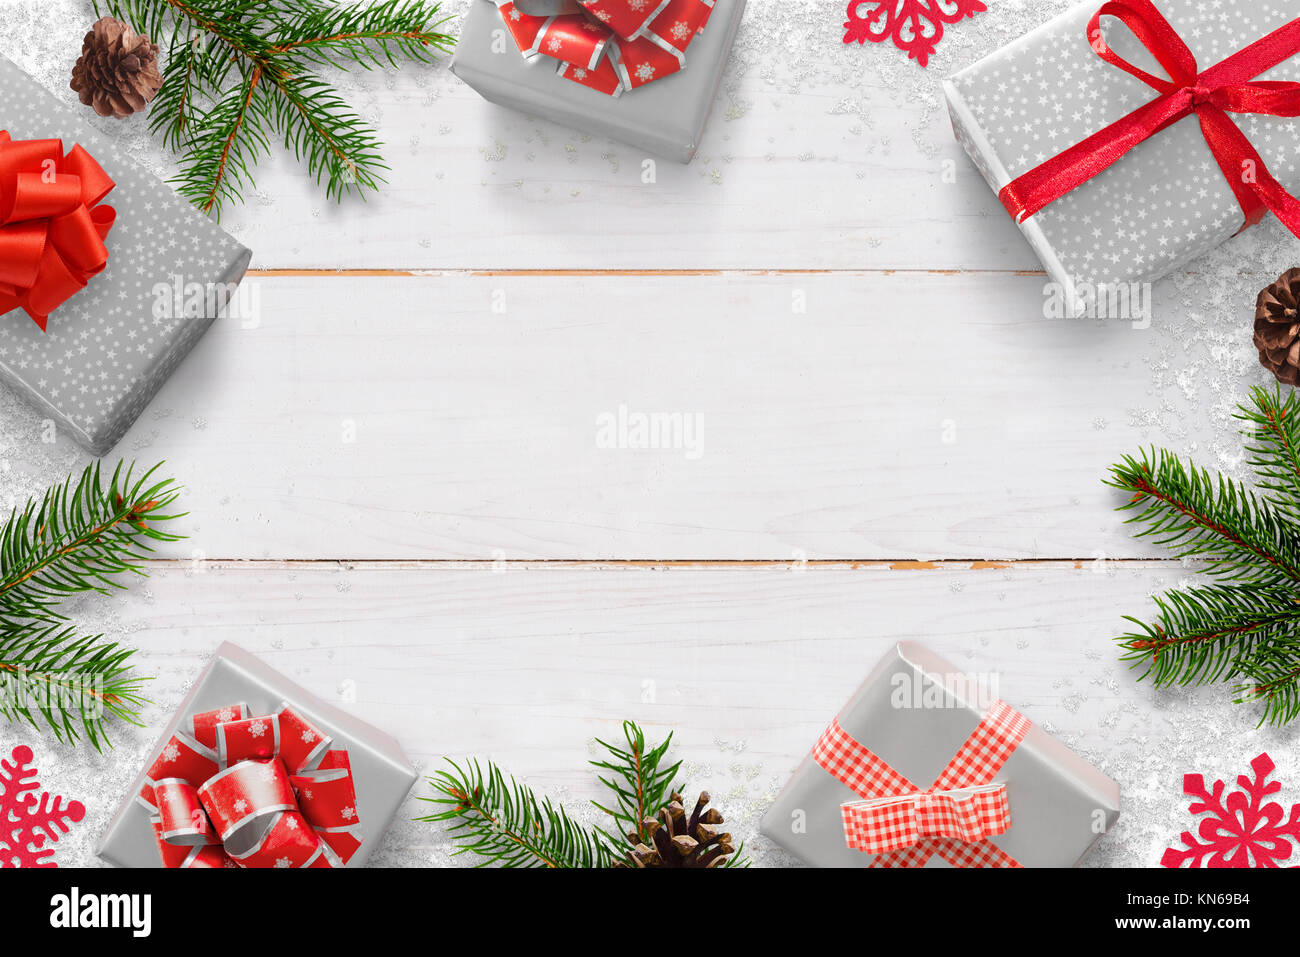 Nouvel An Noël arrière-plan avec des cadeaux et de l'espace libre pour le texte. Conseil en bois blanc avec des branches d'arbre de Noël, cocottes, et décoration flocon Banque D'Images